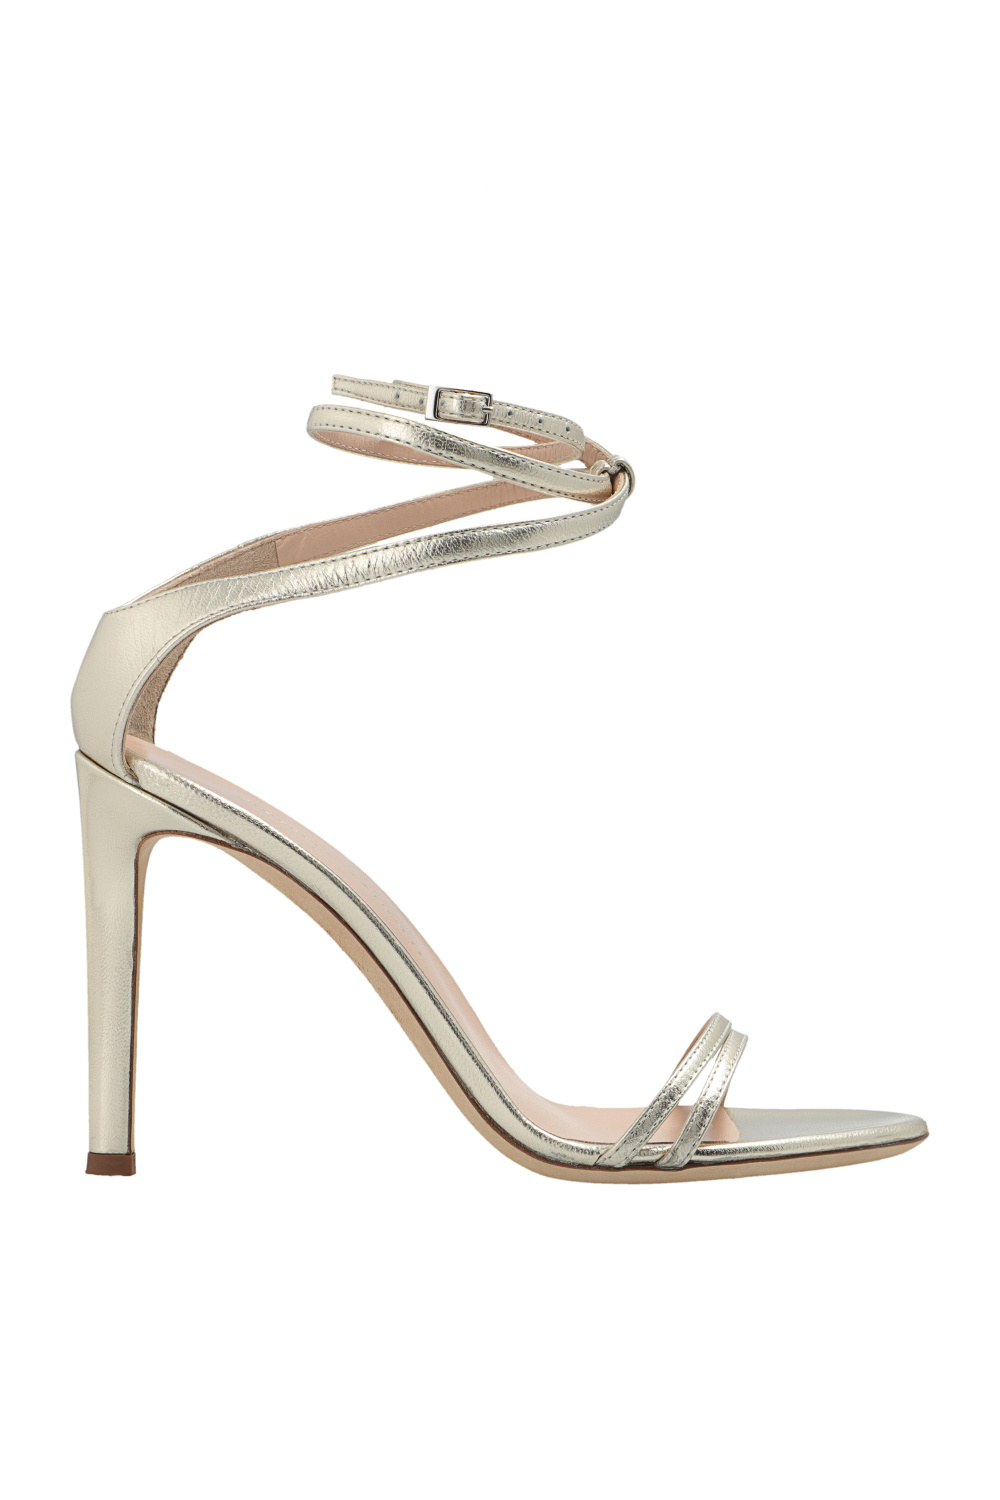 Giuseppe Zanotti ‘Delicius’ stiletto sandals